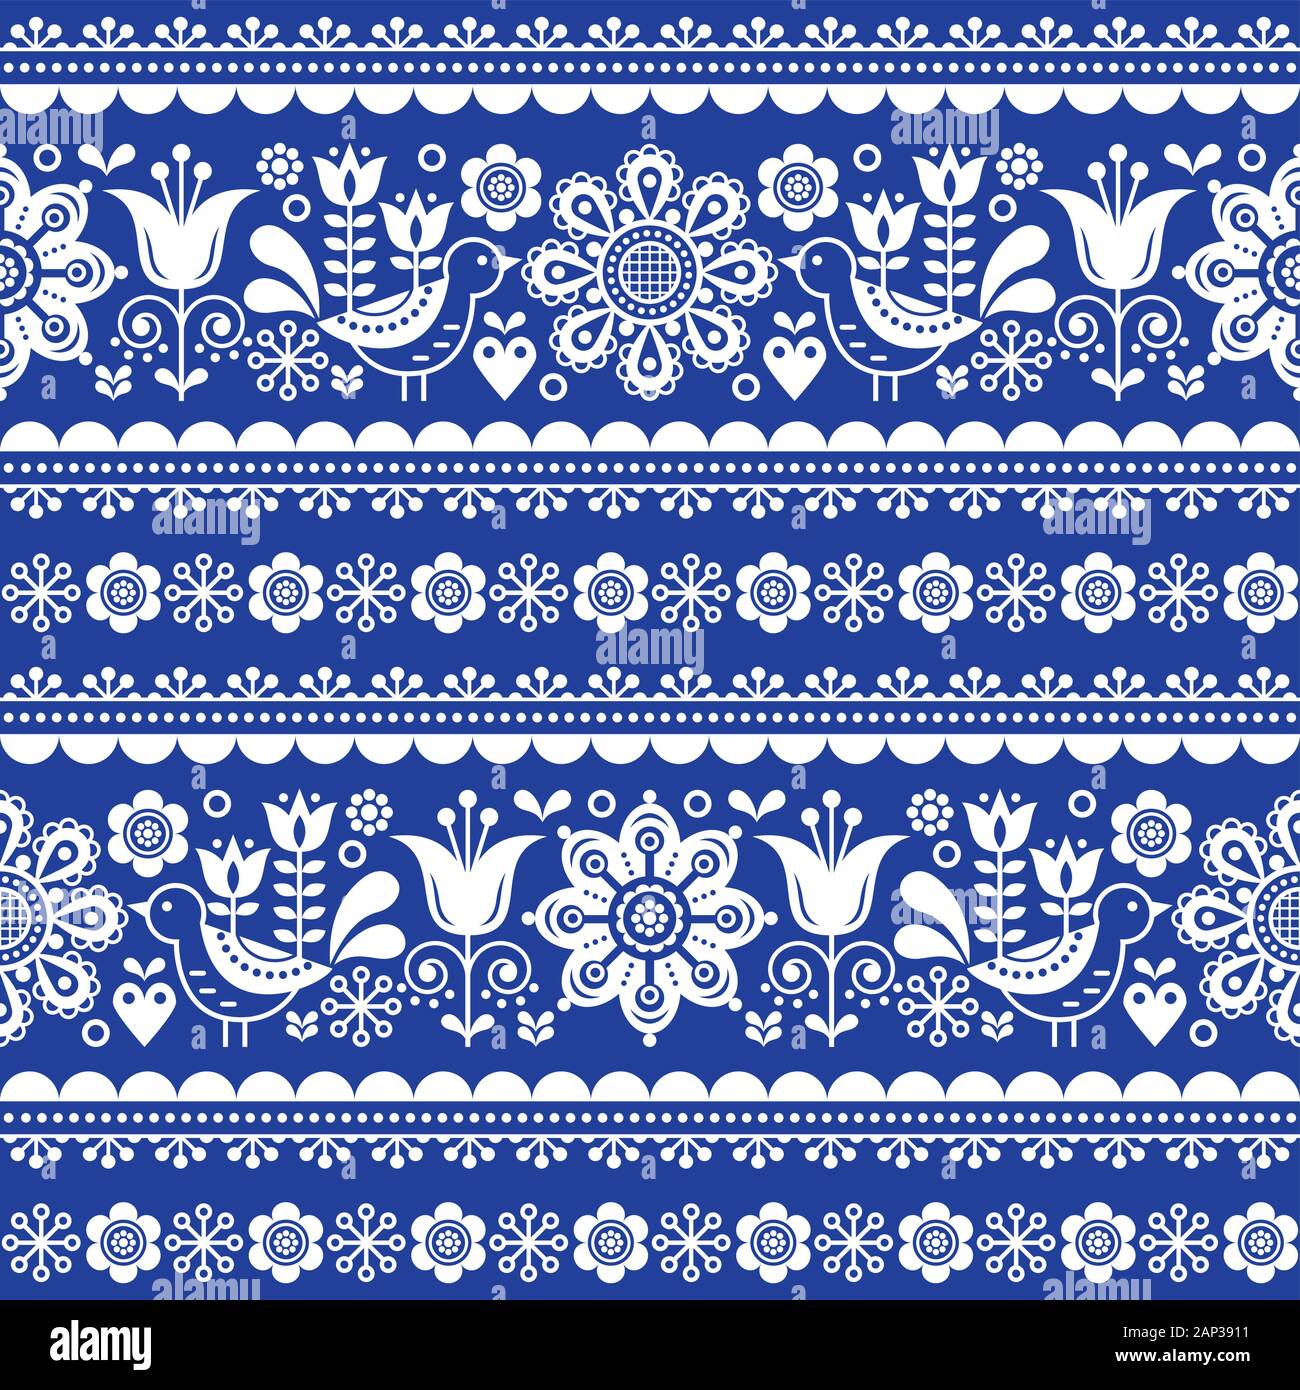 Skandinavische nahtlose Vektor Muster mit Blumen und Vögeln, Nordic olk Kunst sich wiederholende weiß Ornament auf marine blau hintergrund Stock Vektor